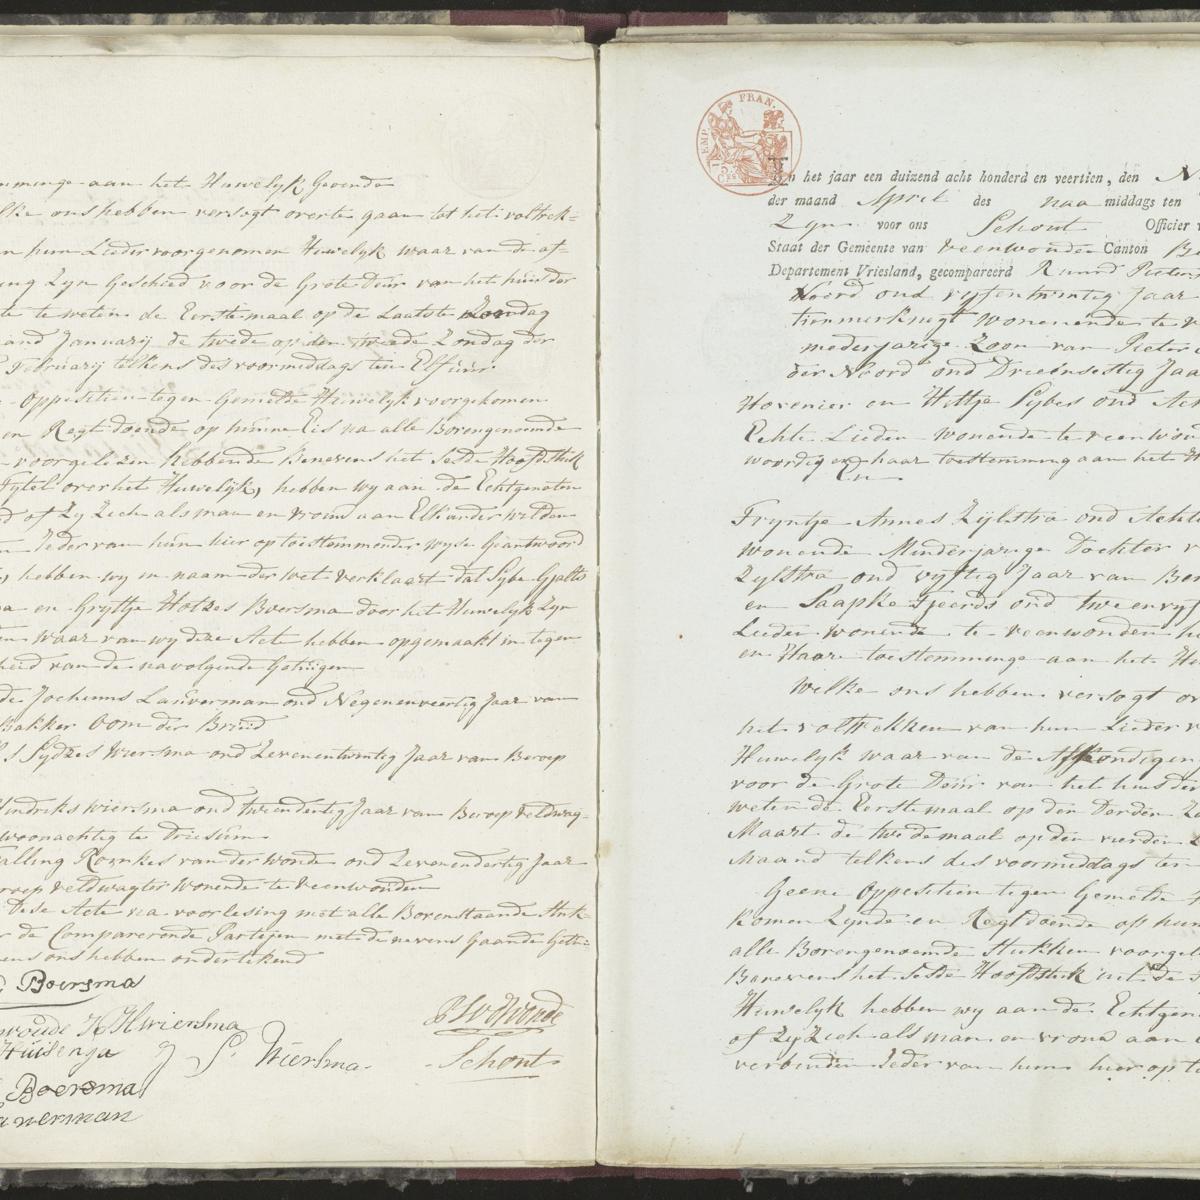 Civil registry of marriages, Veenwouden, 1814, records 1-2